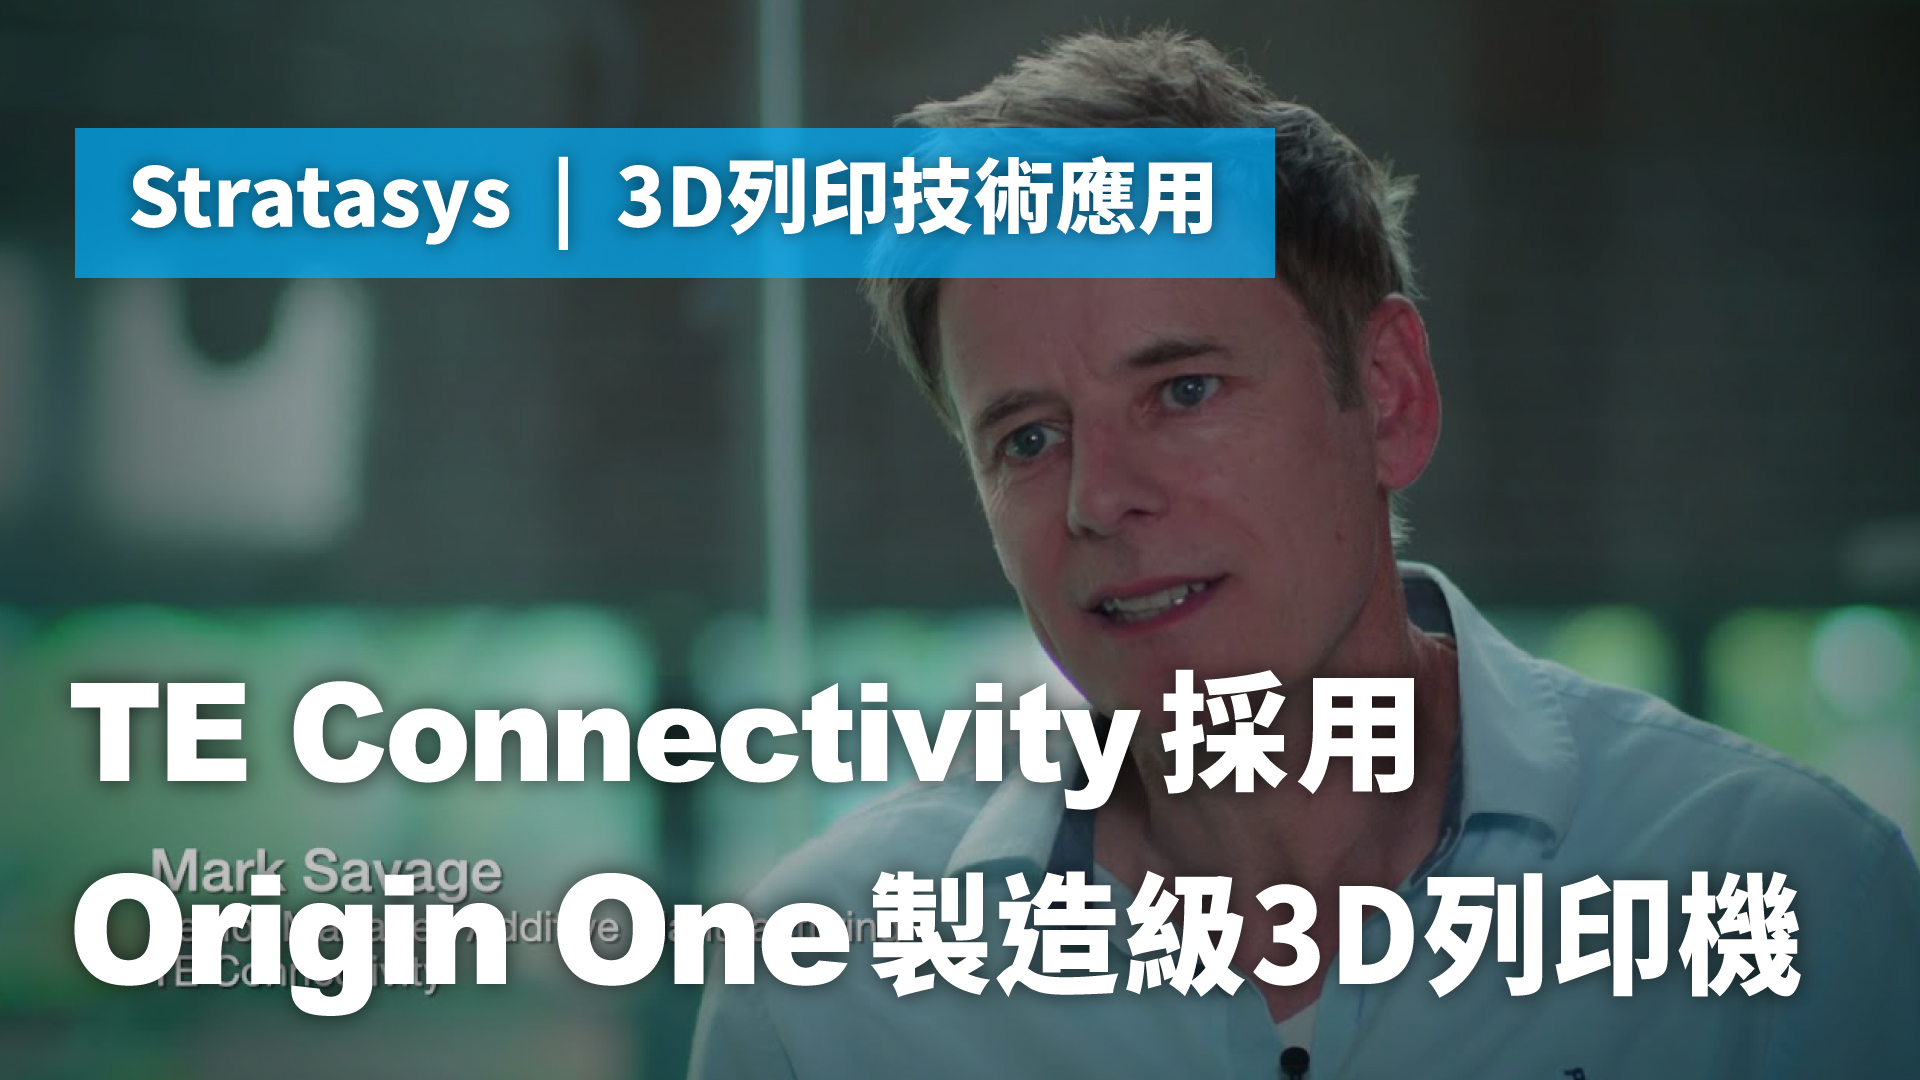 3D列印技術應用 | TE Connectivity採用Origin One製造級3D列印機